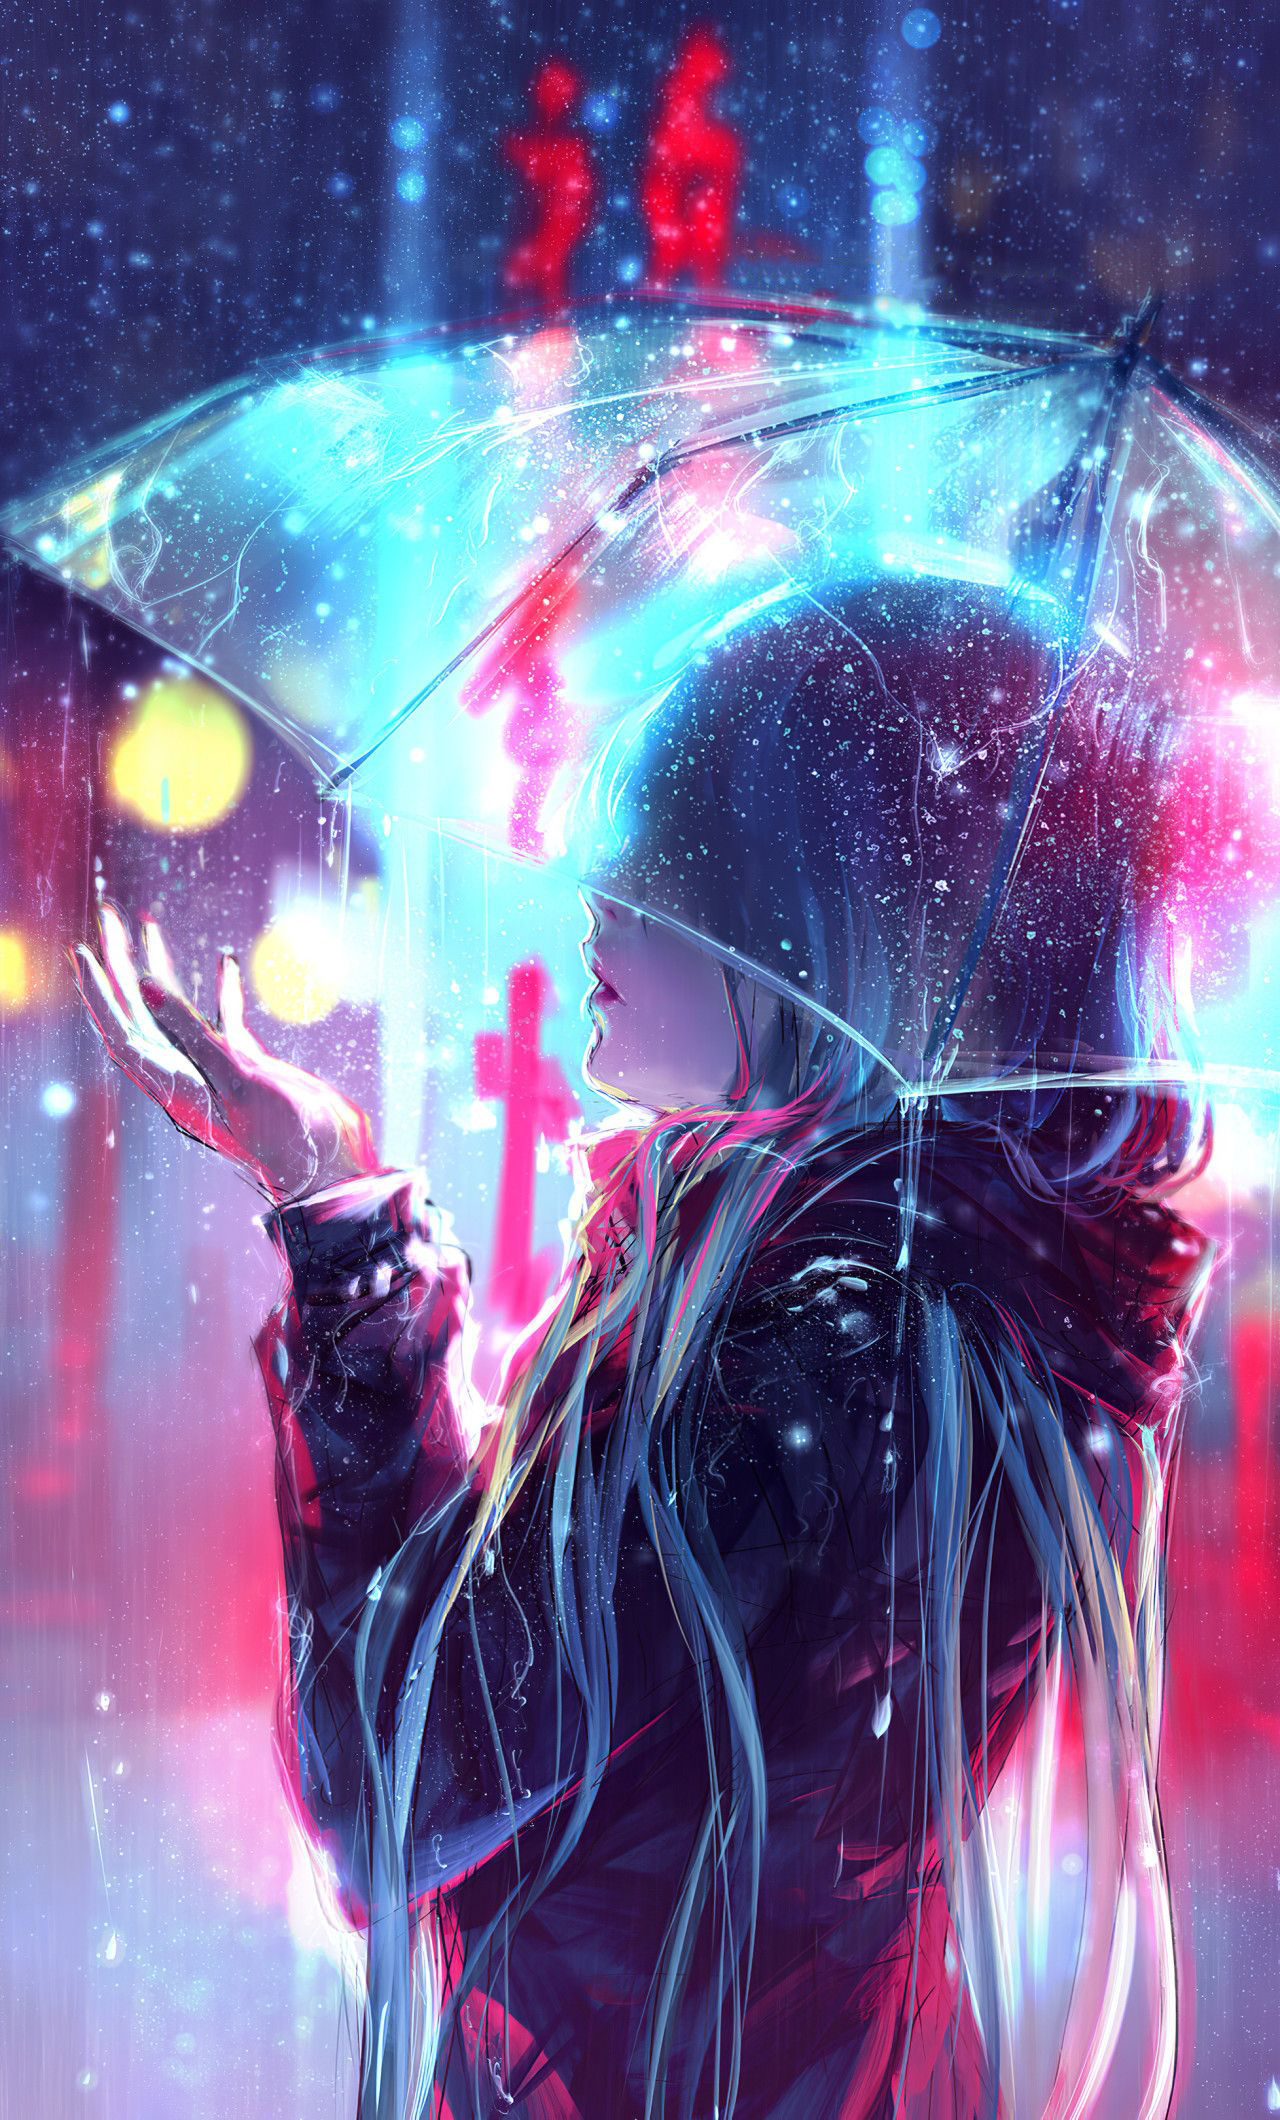 Tuyển tập ảnh mưa buồn Anime dễ thương vô cùng thơ mộng